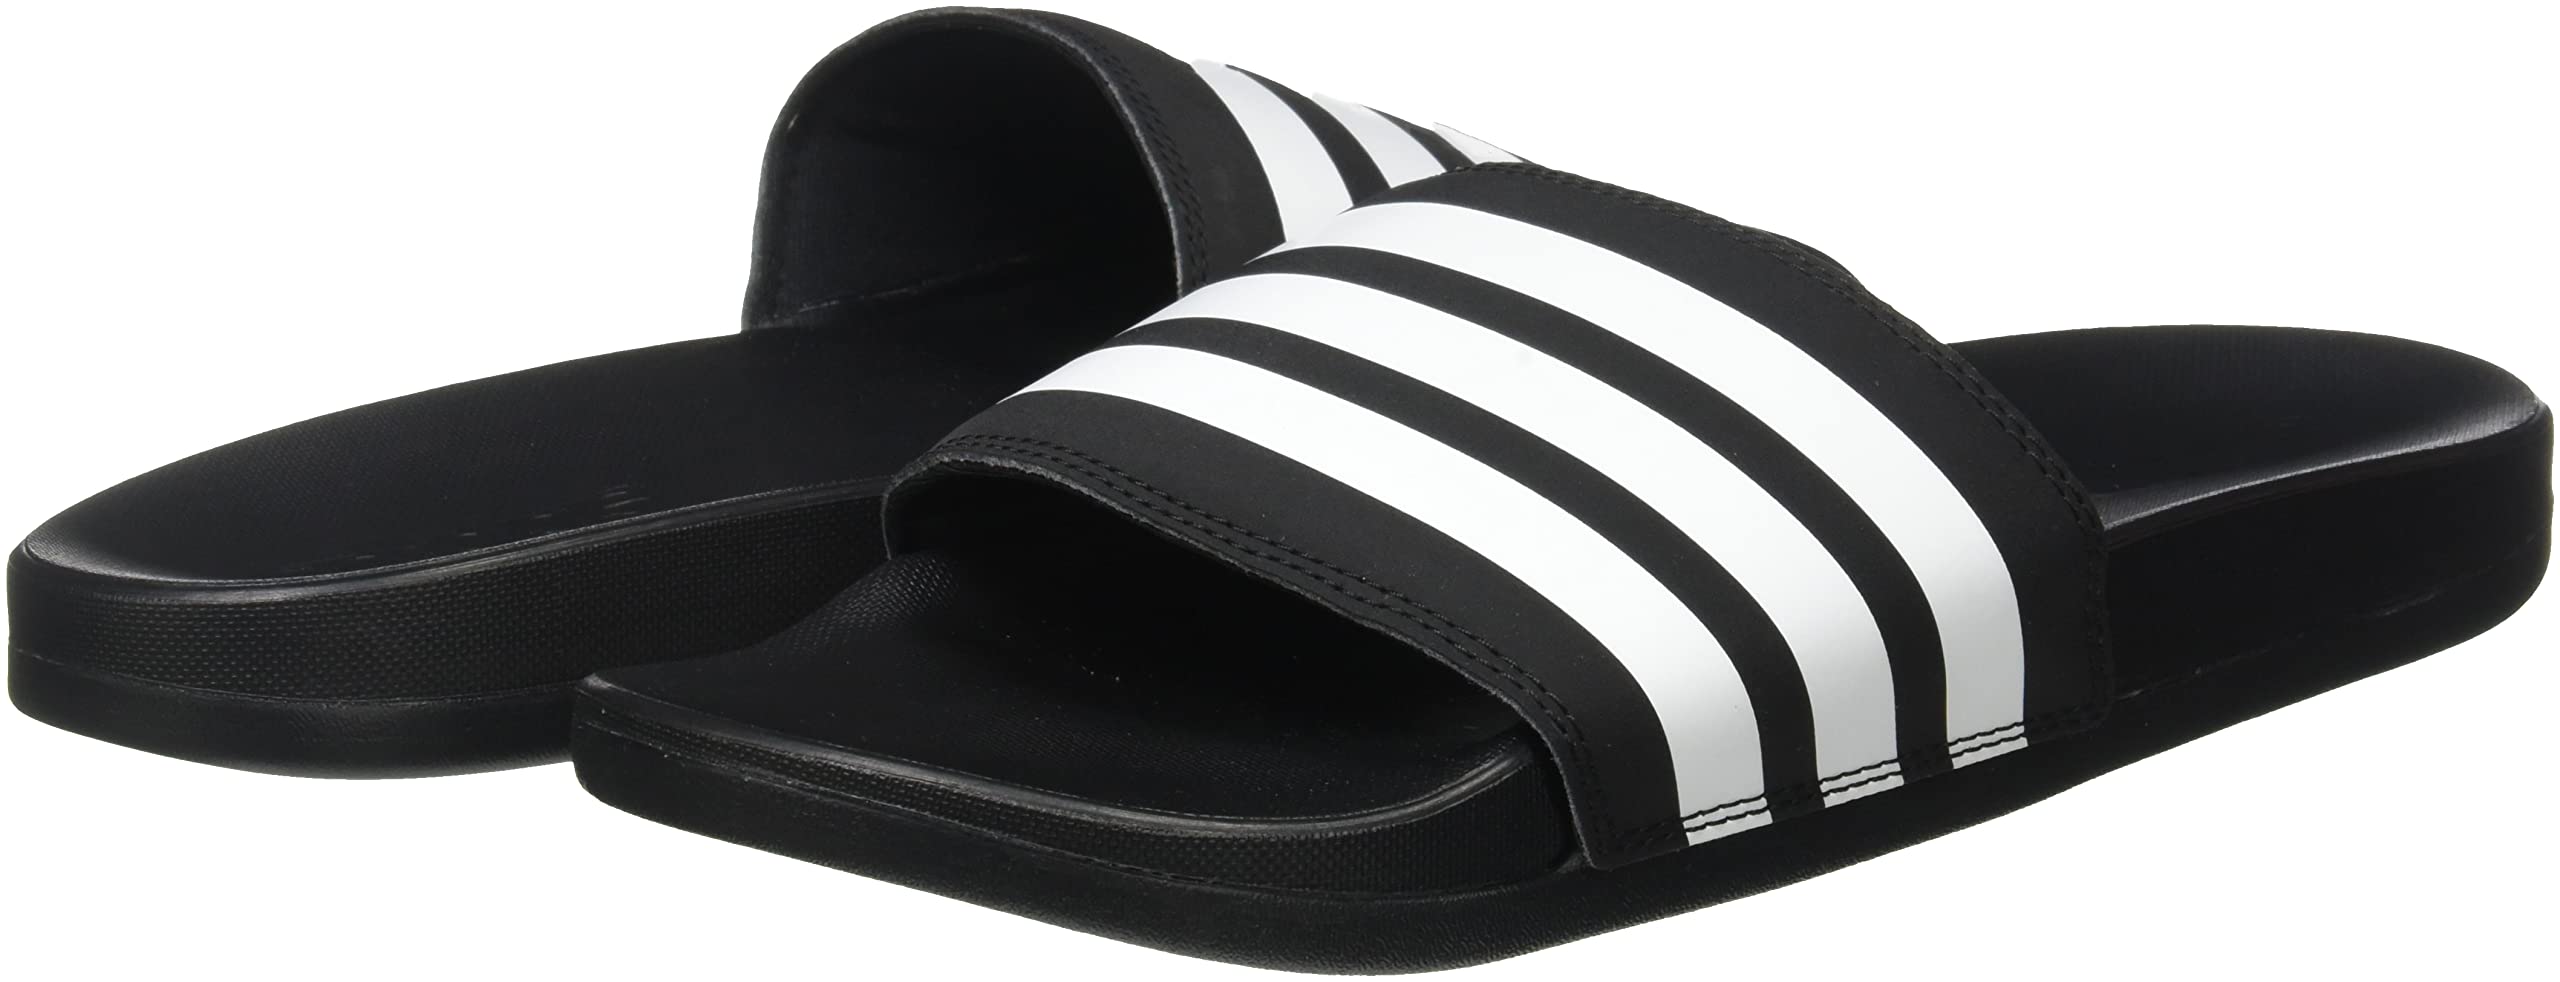 adidas Men's Adilette Comfort Slides Sandal